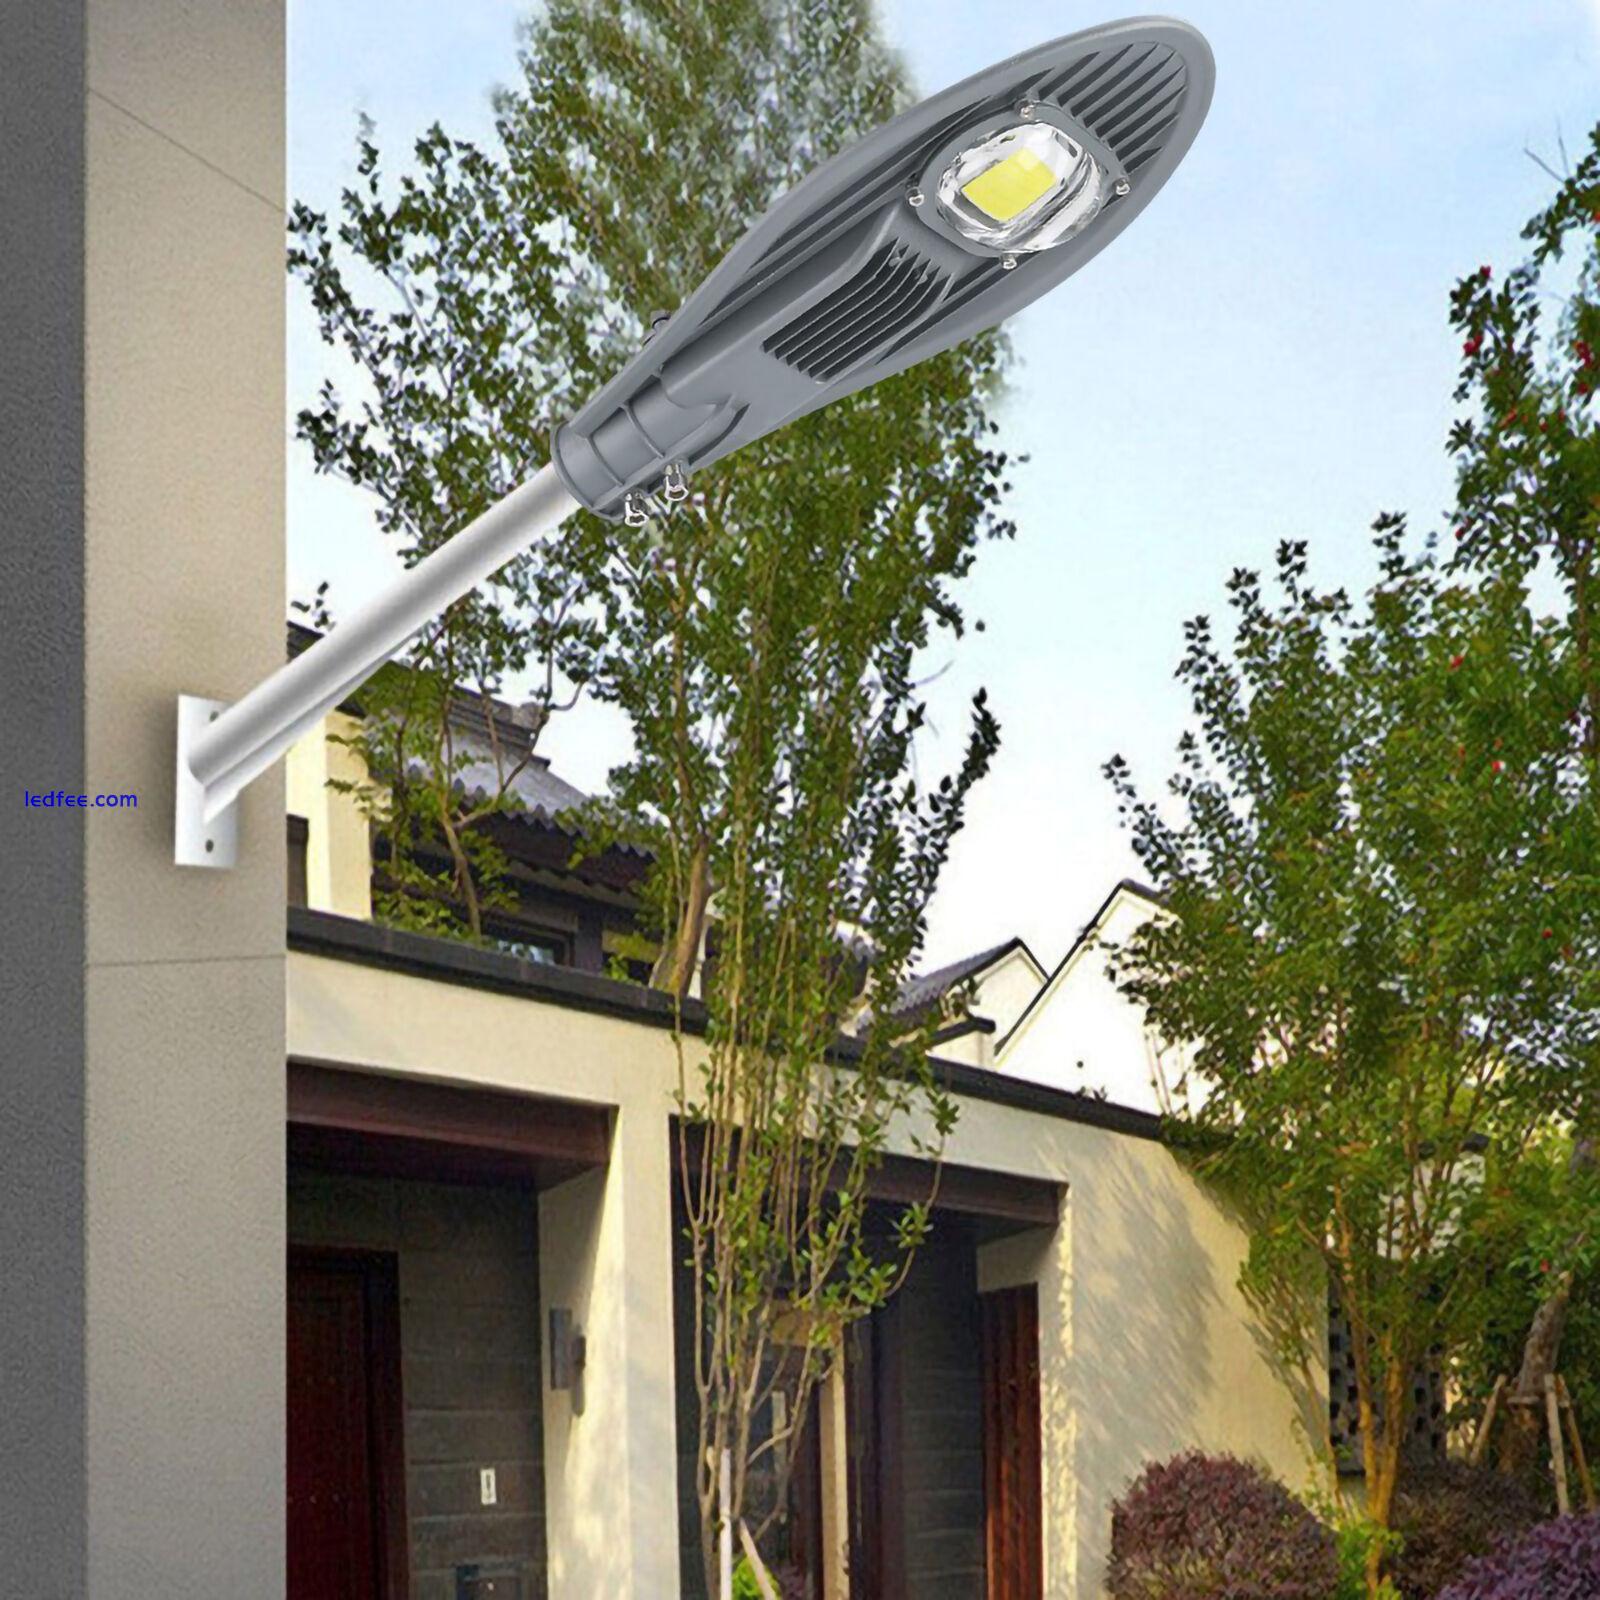 LED Road Street Flood Light Lamp For Outdoor Garden Yard Lamp Lighting 3 